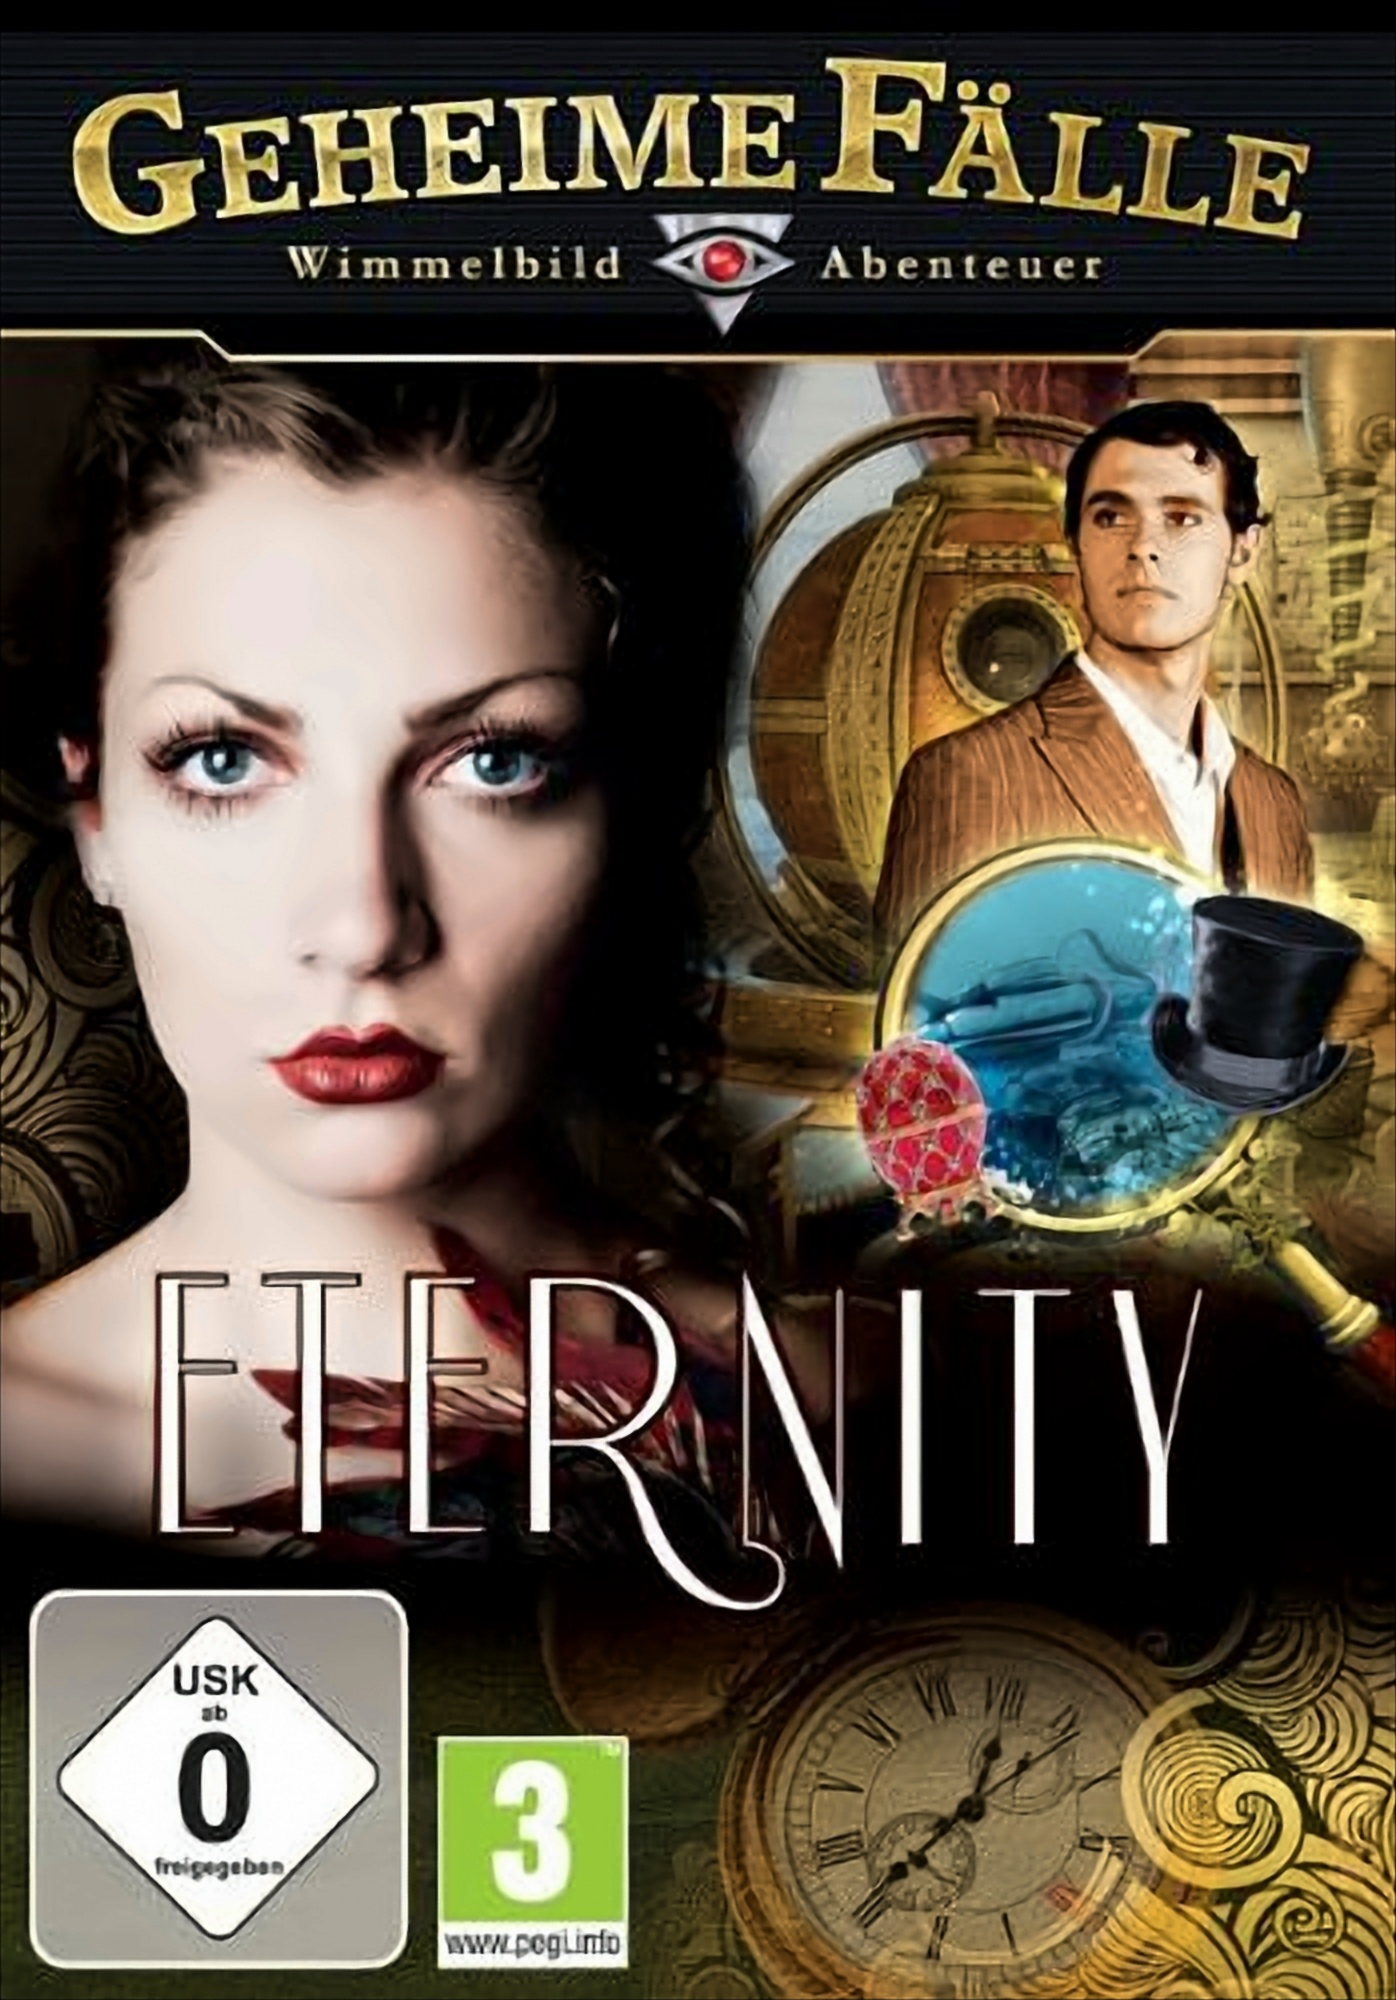 Eternity - Geheime [PC] Fälle: